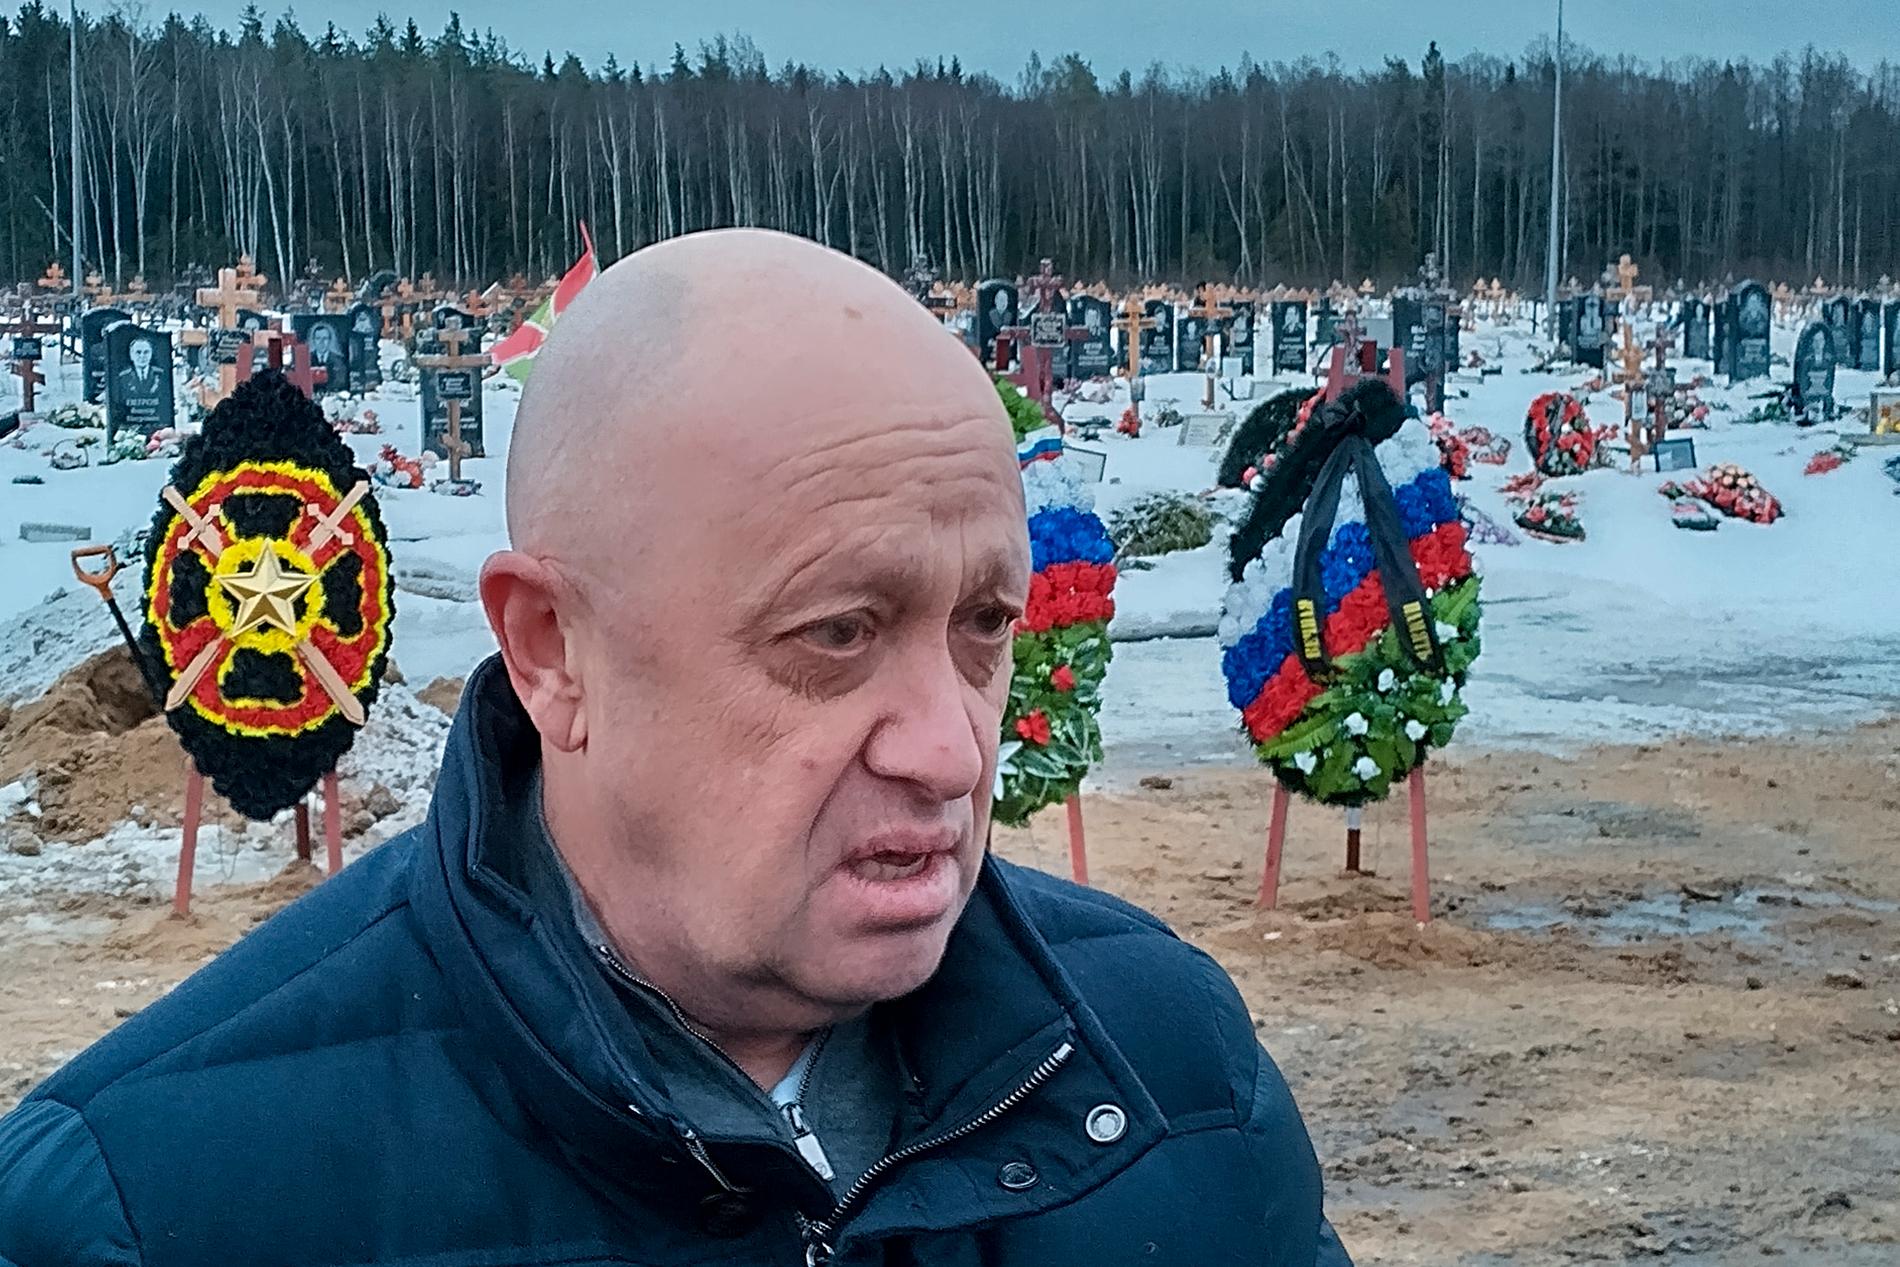 Evan Gerschkovich rapporterade om Wagnergruppen. På bild Wagnerchefen Jevgenij Prigozjin, även kallad ”Putins kock”.